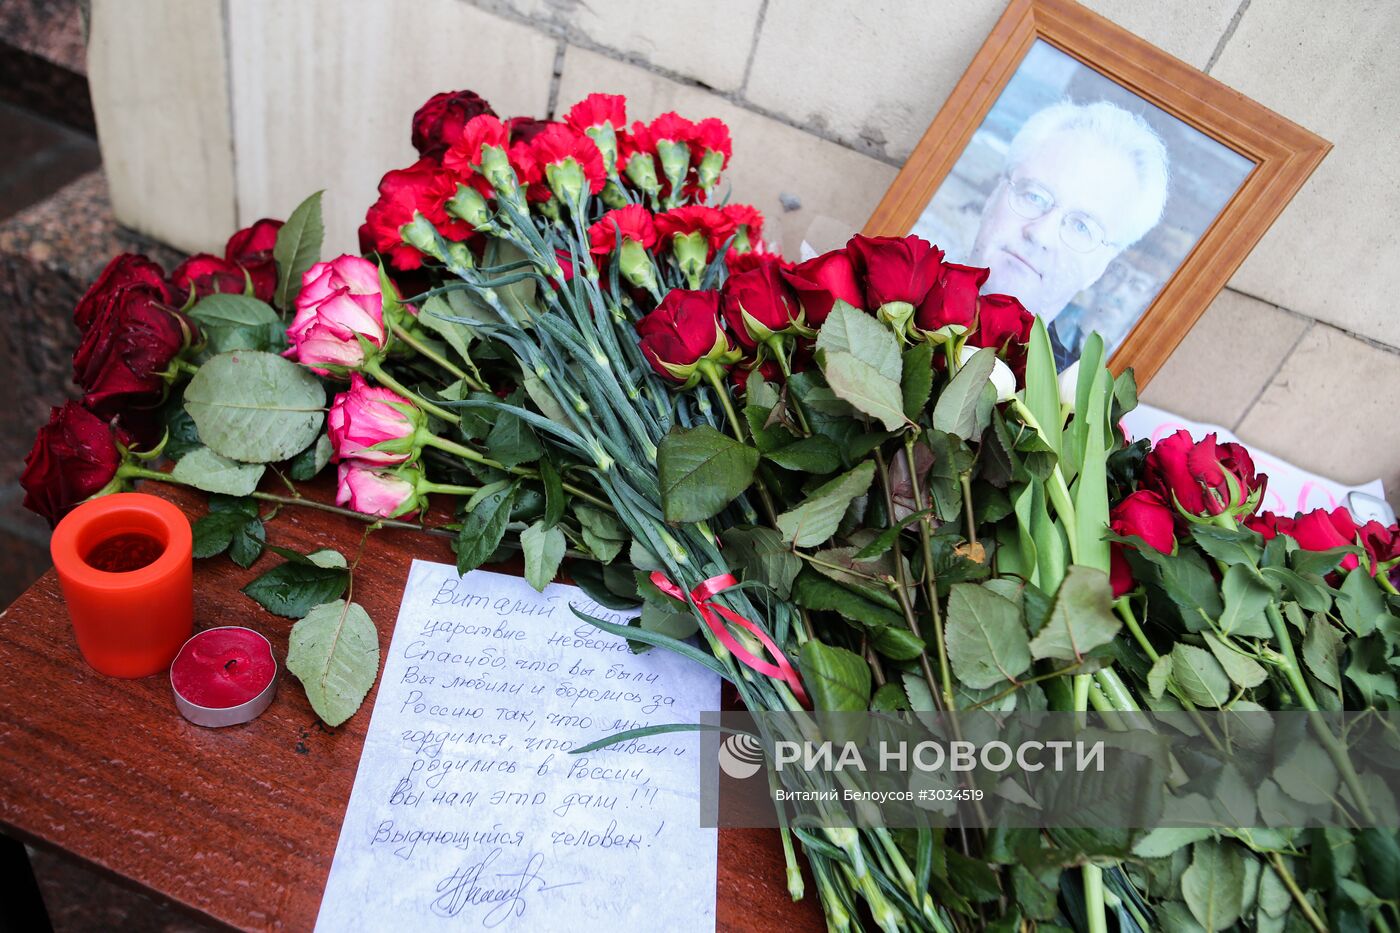 Цветы у здания МИД РФ в связи с кончиной постпреда России при ООН В.Чуркина